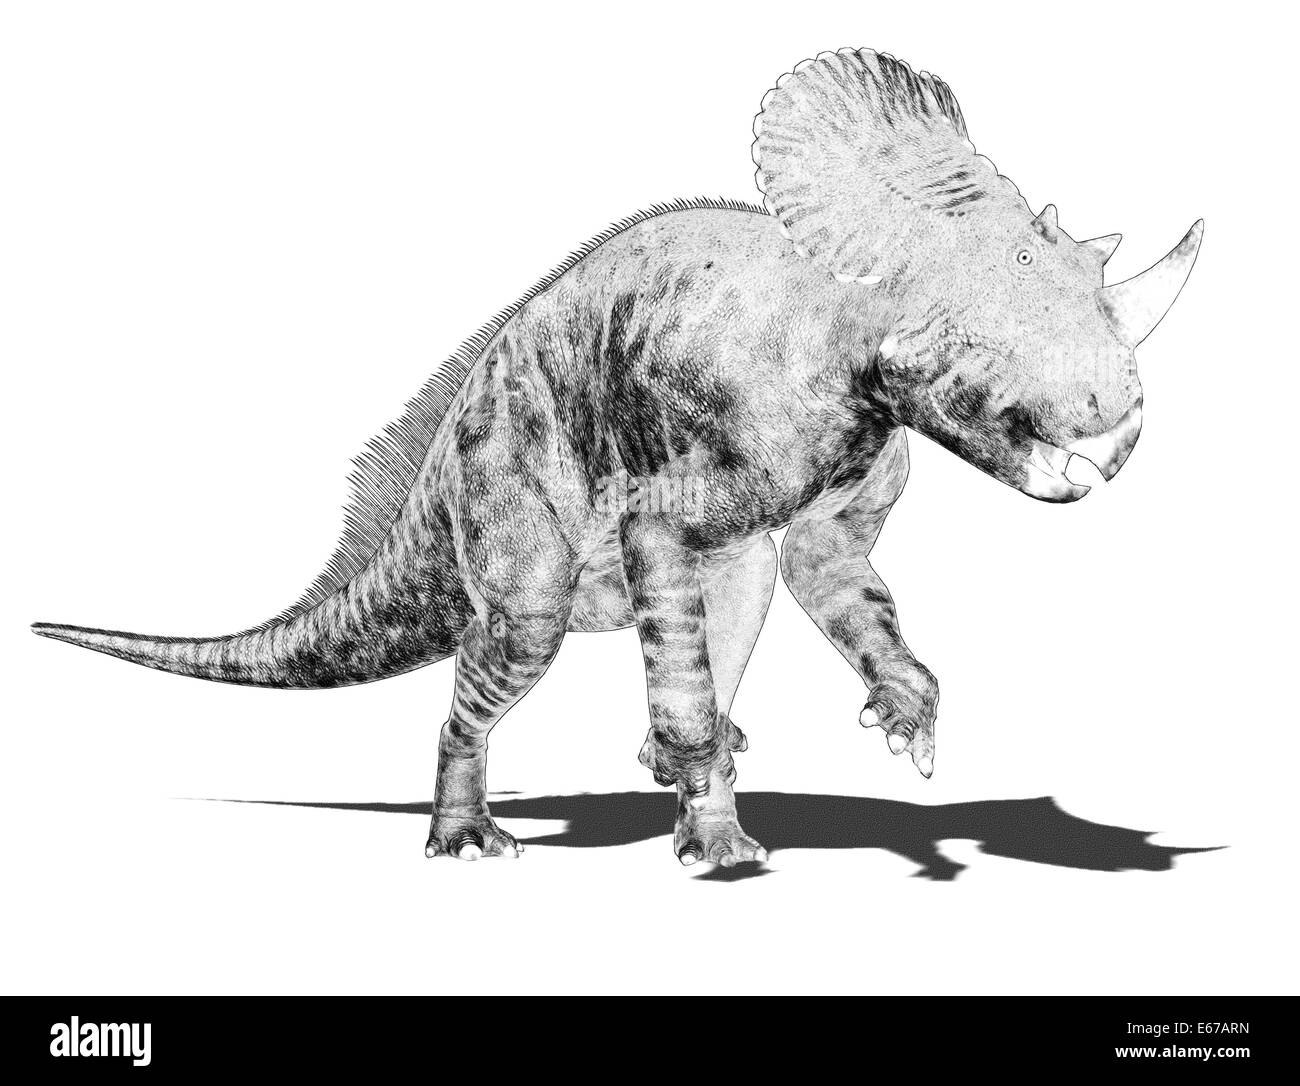 Dinosaurier Brachyceratops / dinosaur Brachyceratops Stock Photo